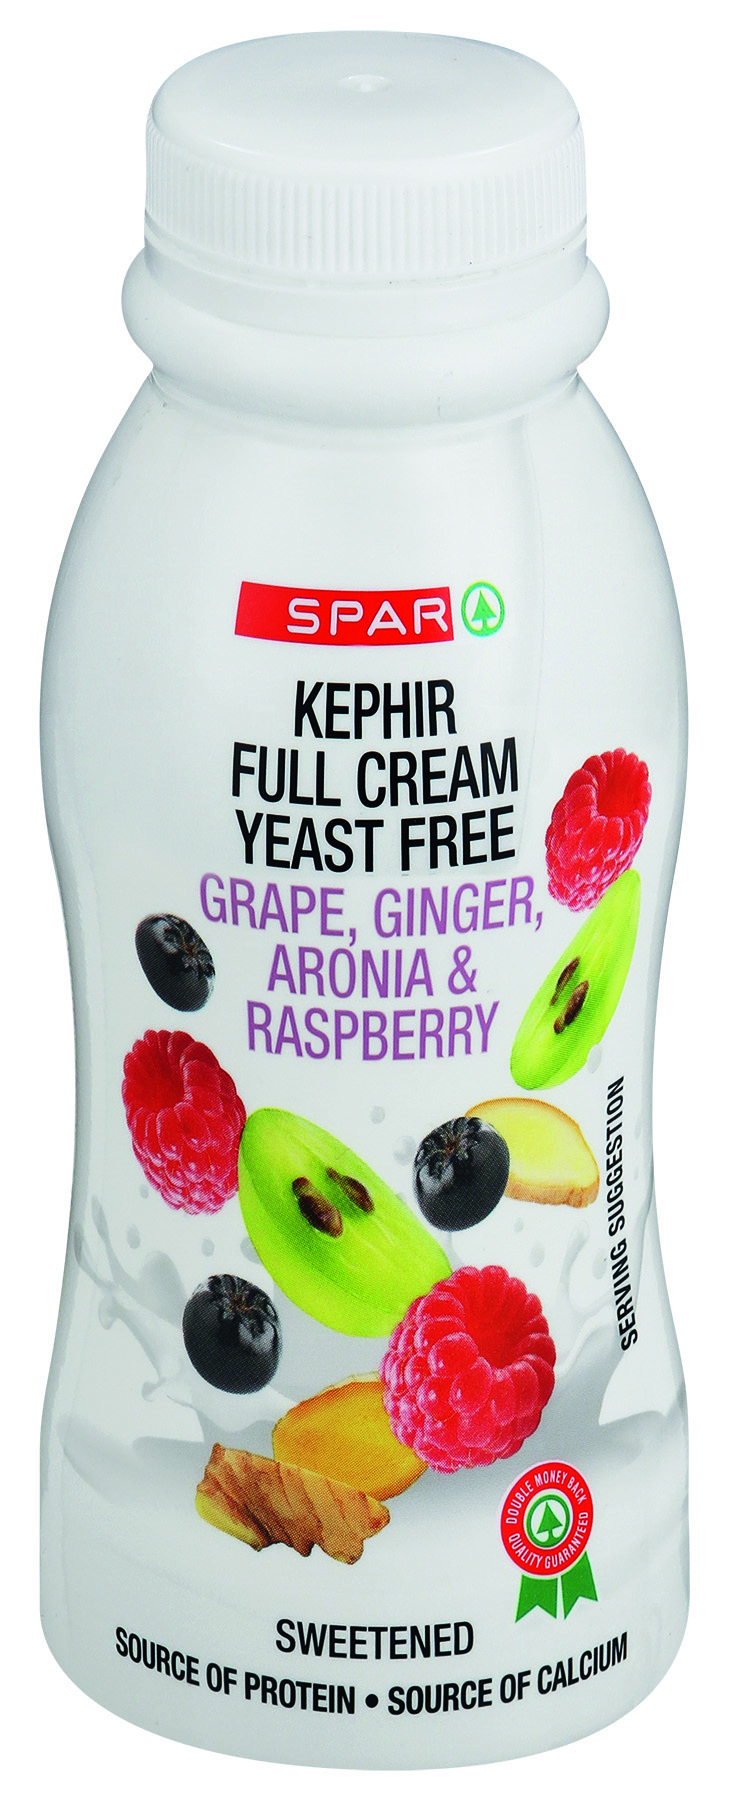 kephir grape, ginger, aronia & raspberry